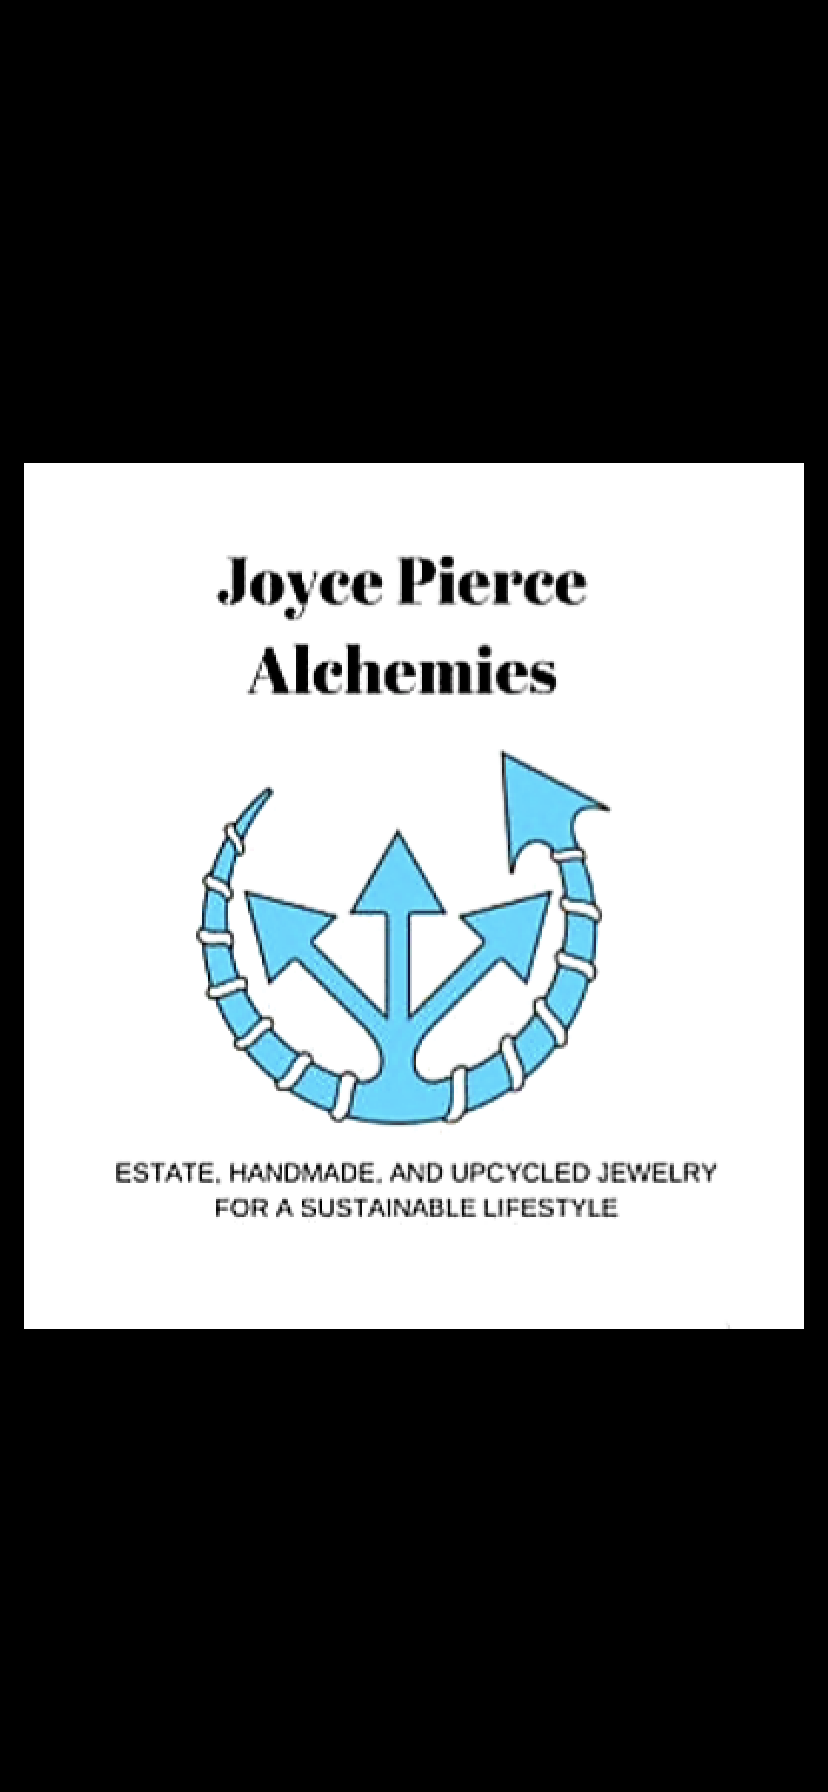 Joyce Pierce jewelry logo